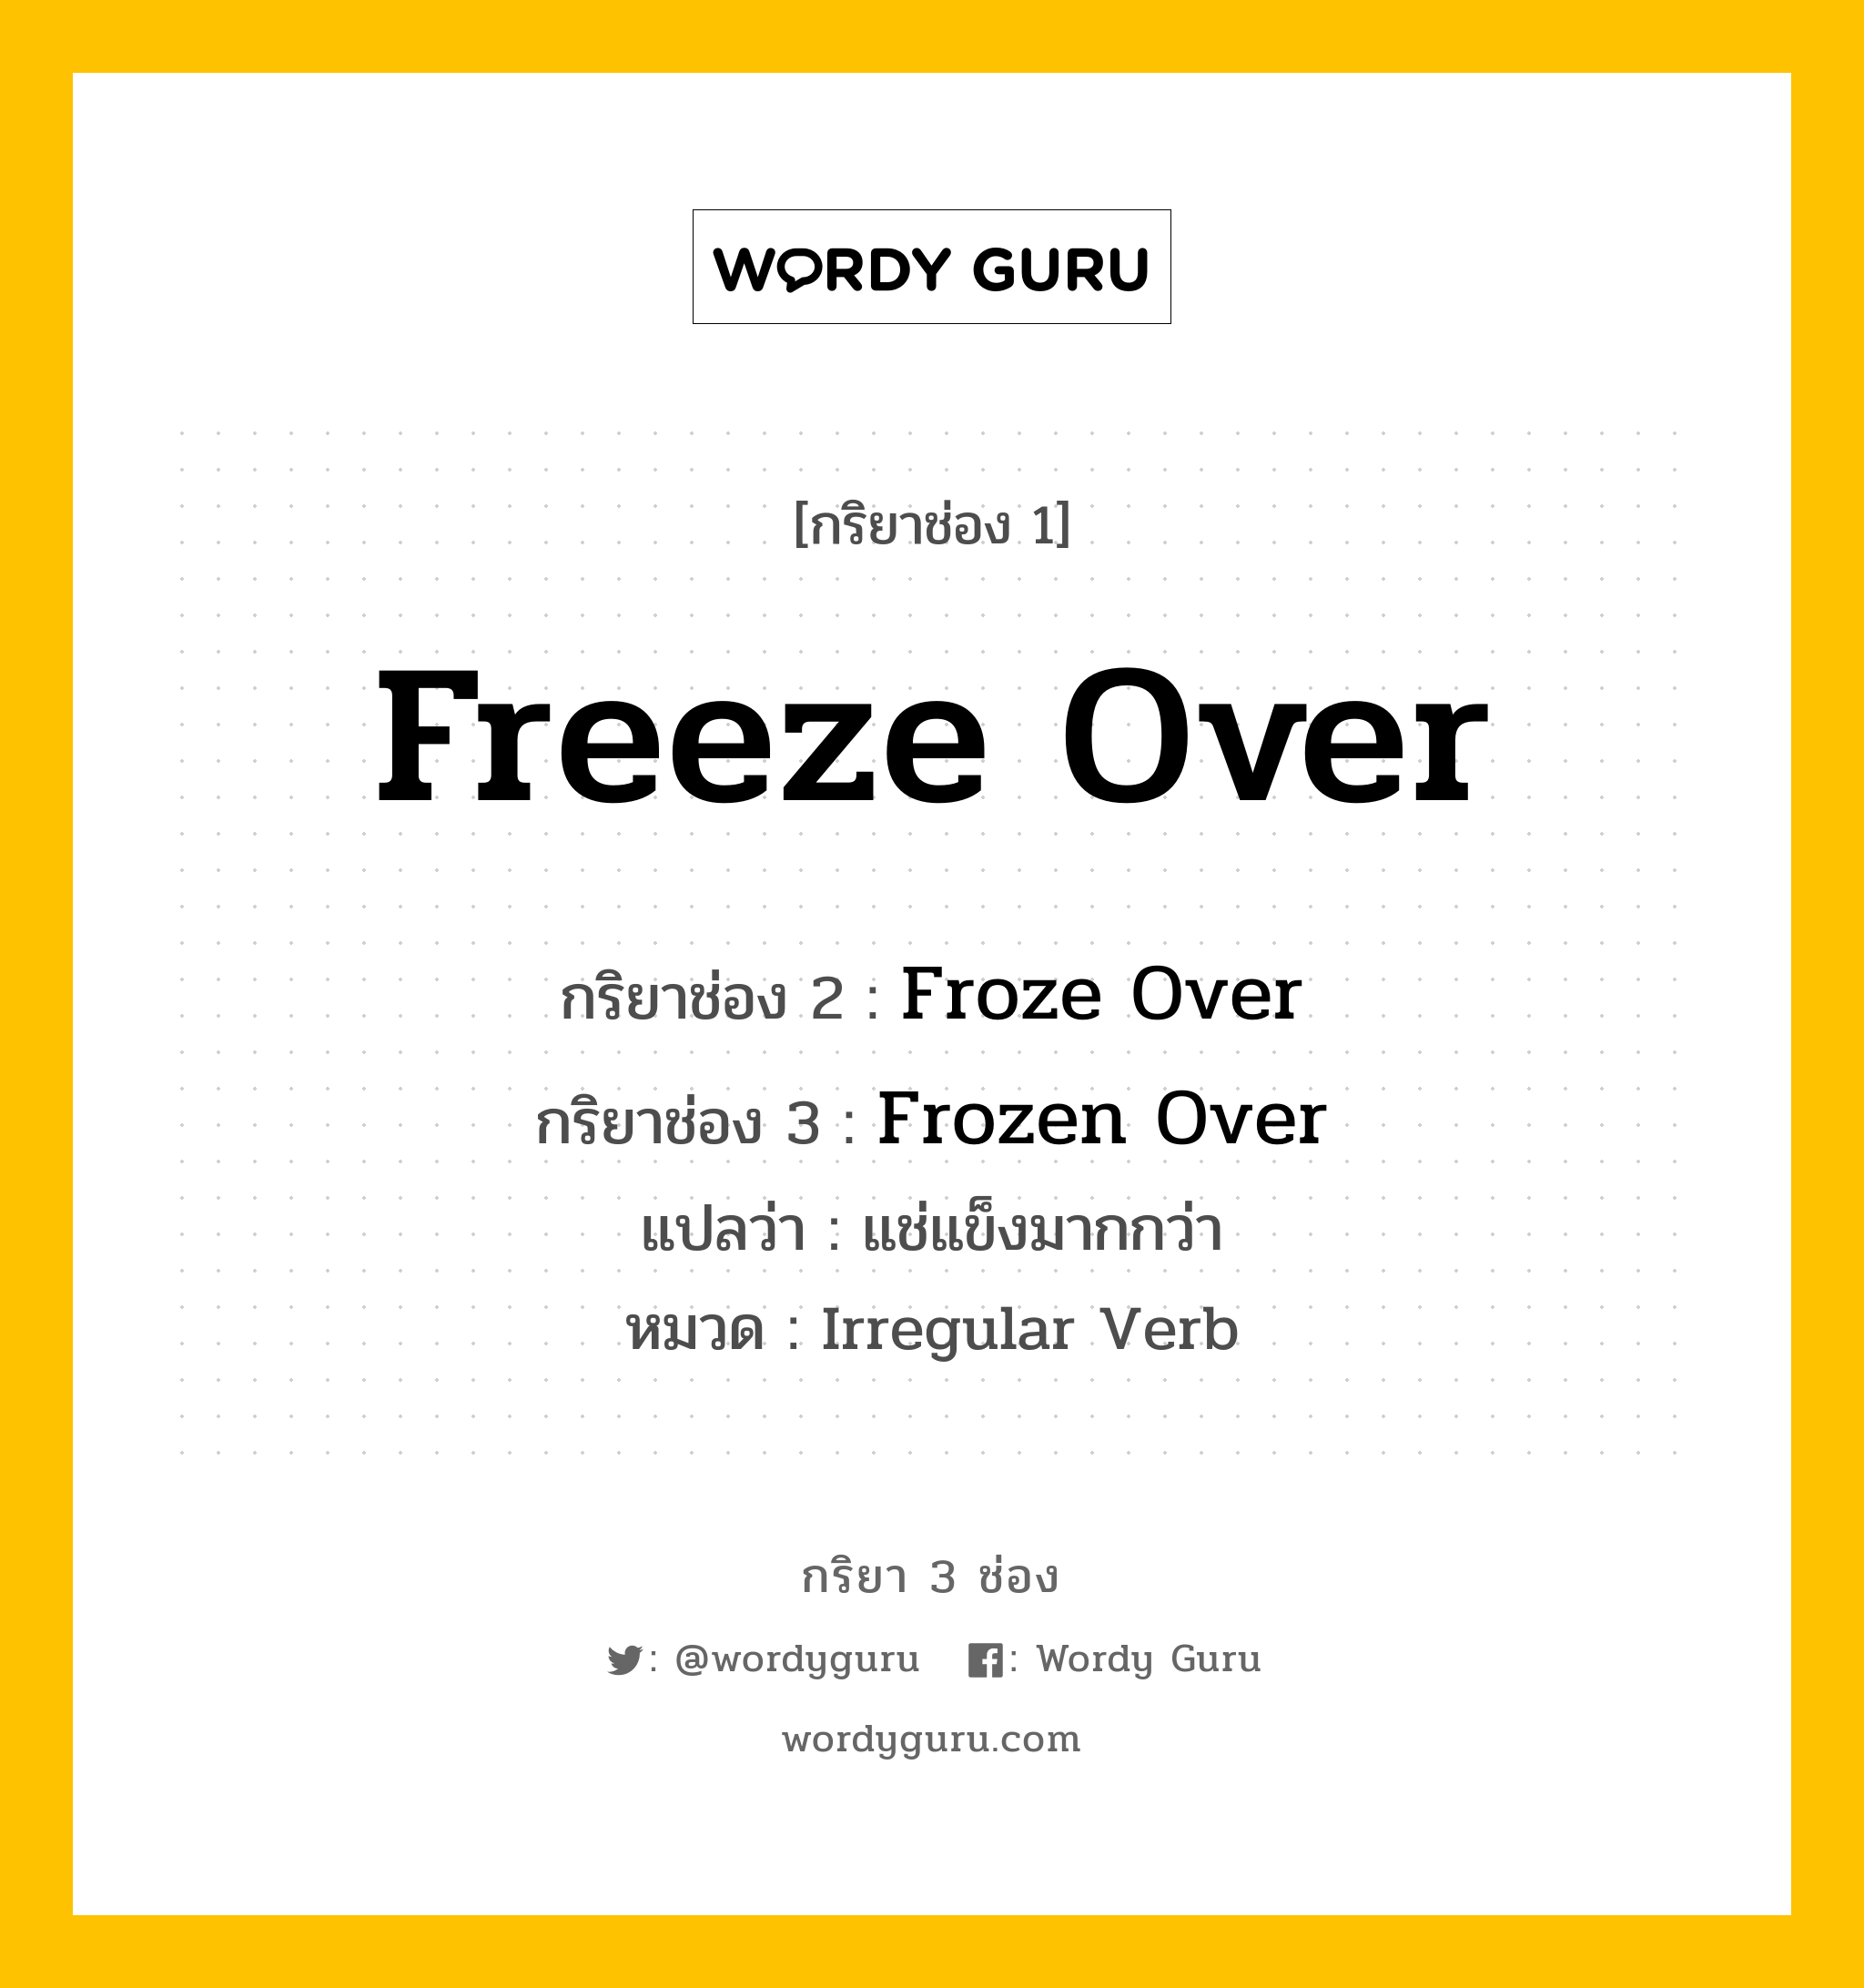 กริยา 3 ช่อง ของ Freeze Over คืออะไร?, กริยาช่อง 1 Freeze Over กริยาช่อง 2 Froze Over กริยาช่อง 3 Frozen Over แปลว่า แช่แข็งมากกว่า หมวด Irregular Verb หมวด Irregular Verb